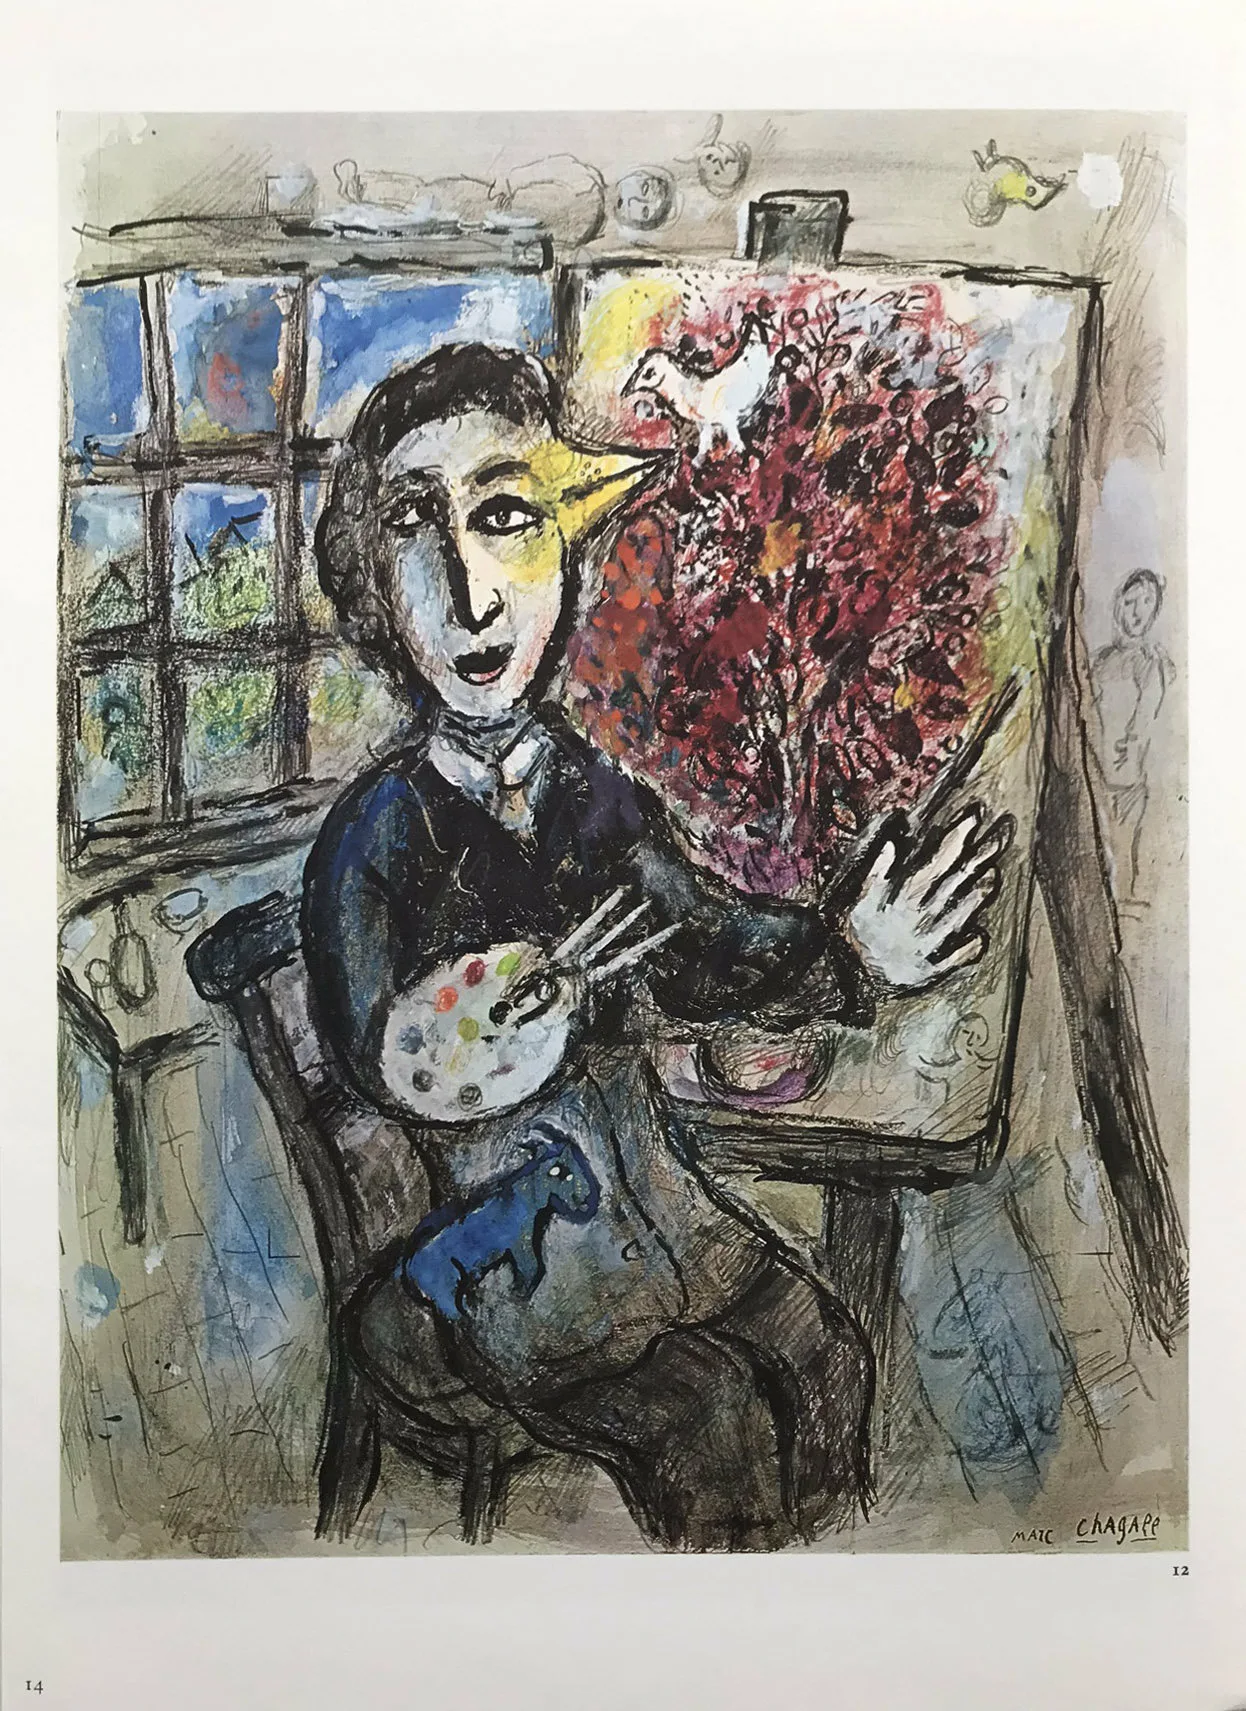 Marc Chagall Le Peintre Oiseau, DM04225 Derriere le miroir 1977